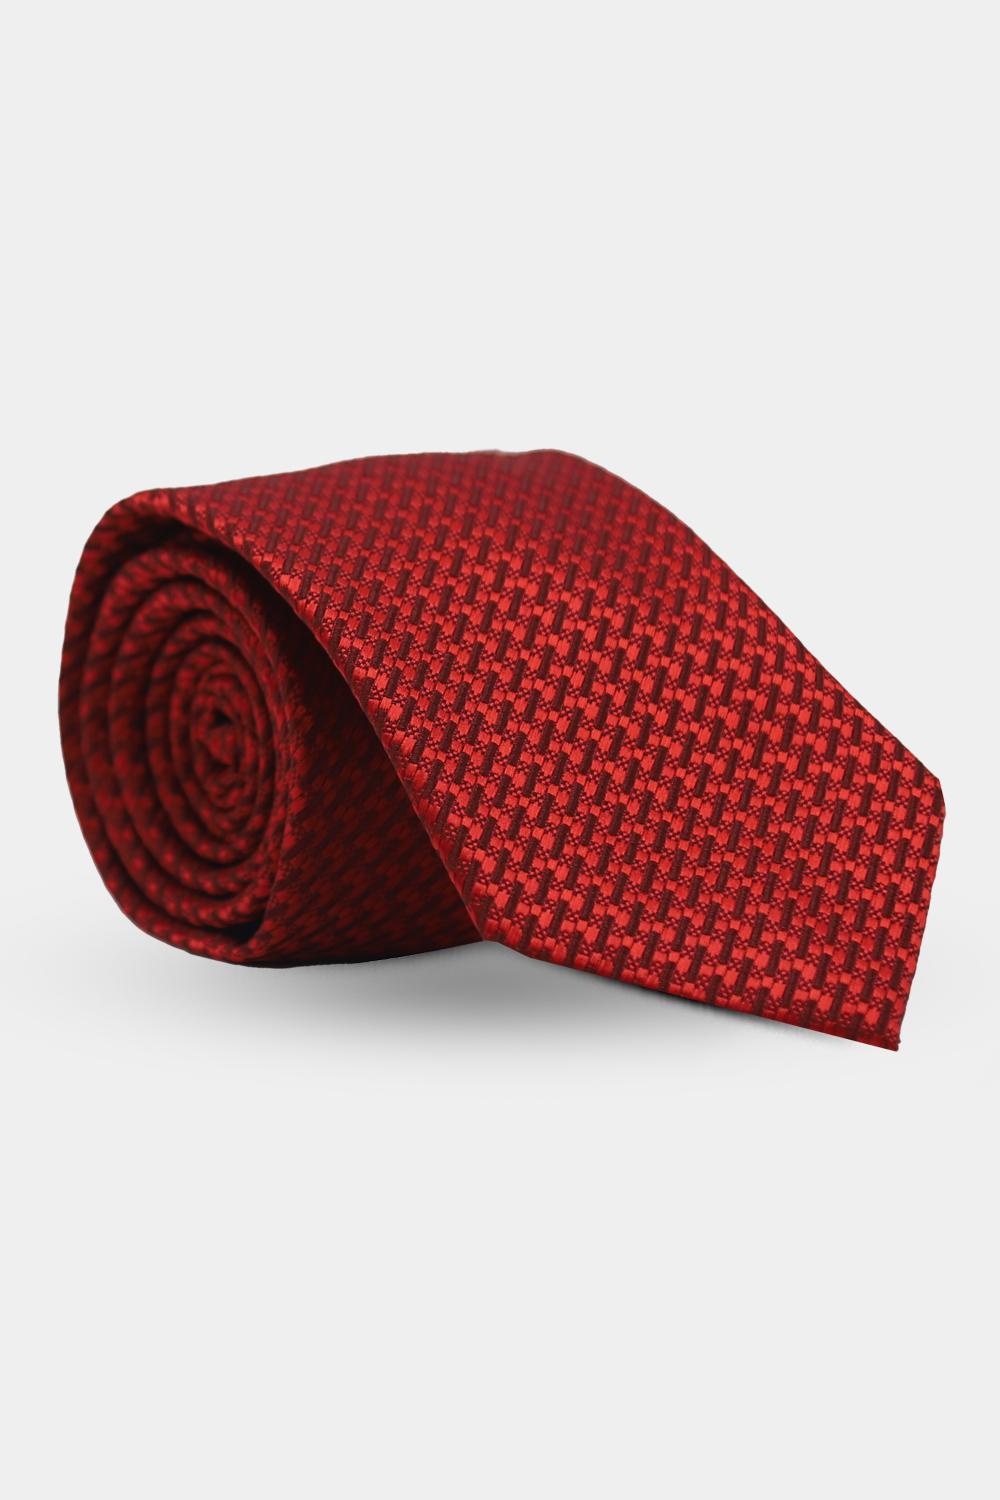 Jacquard Tie 7.5 cm Red - TIE HOUSE